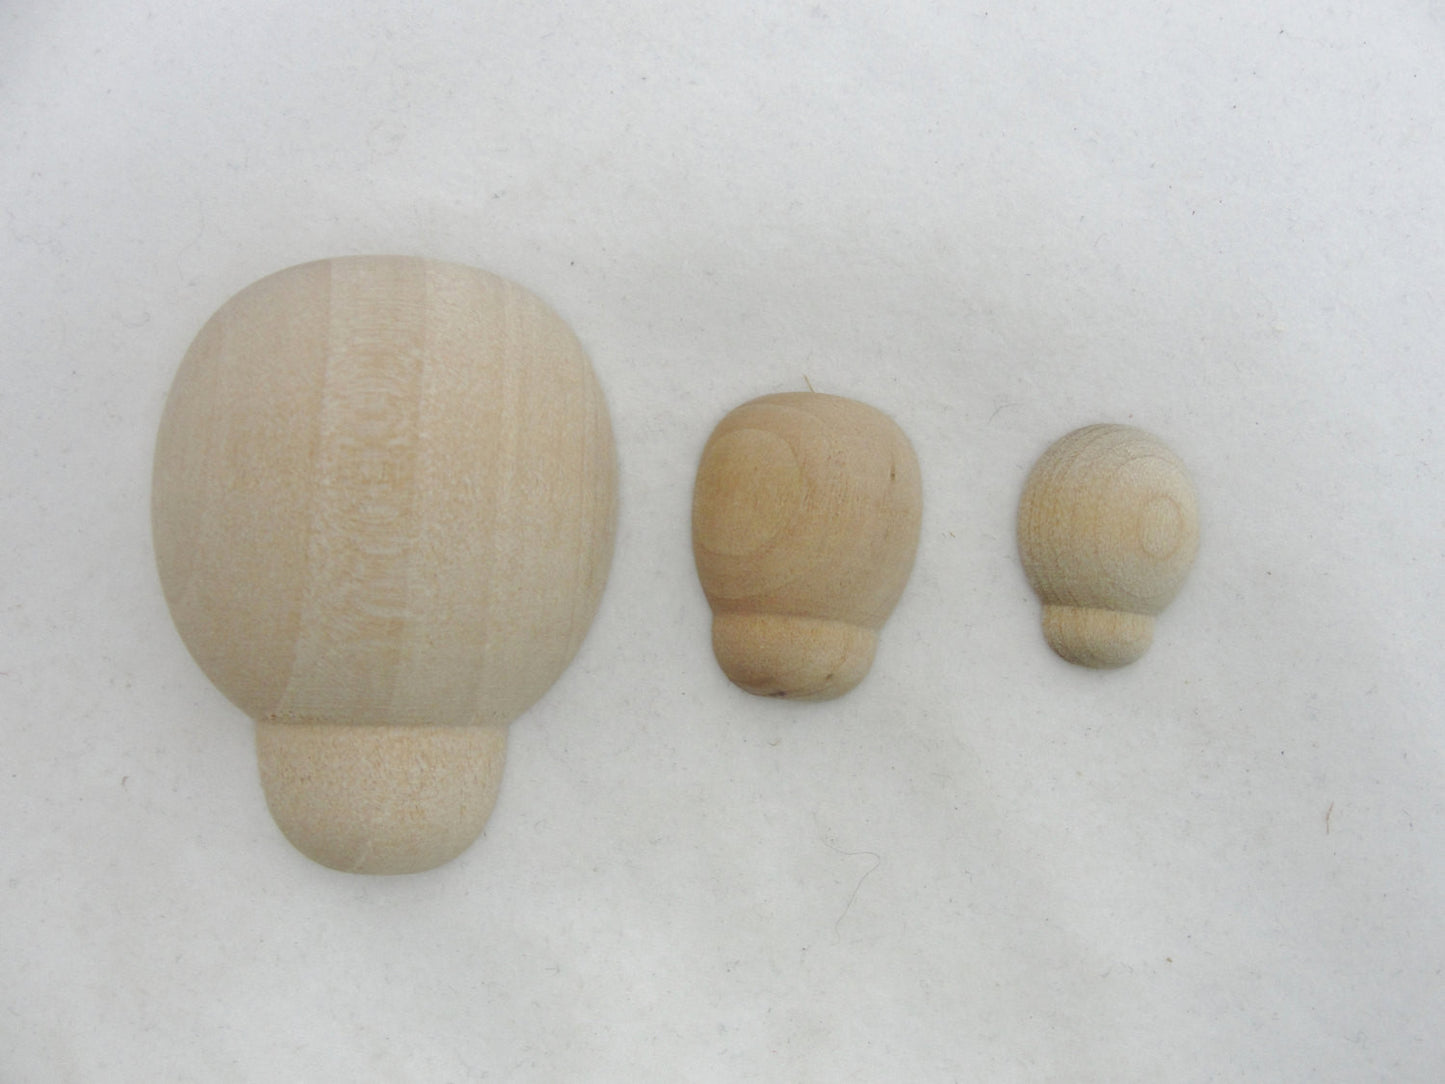 Tiny wooden Ladybug 3/4" long diy set of 6 - Wood parts - Craft Supply House